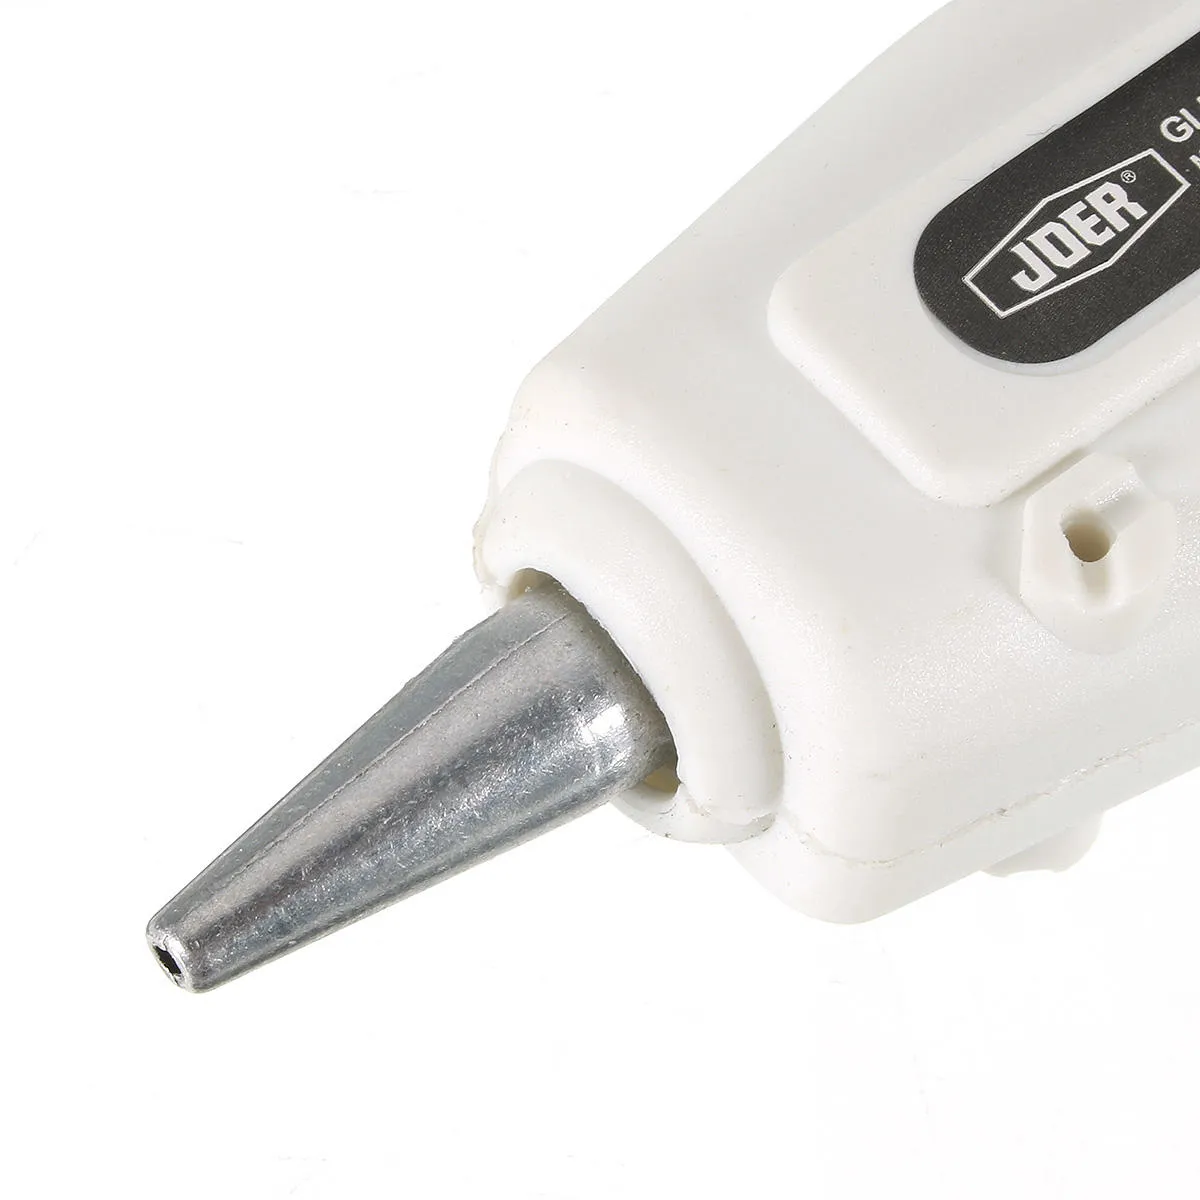 25W Hot Melt Air Glue Gun High Temp Heater Mini Repair Heat Tool with 50pcs Glue Sticks